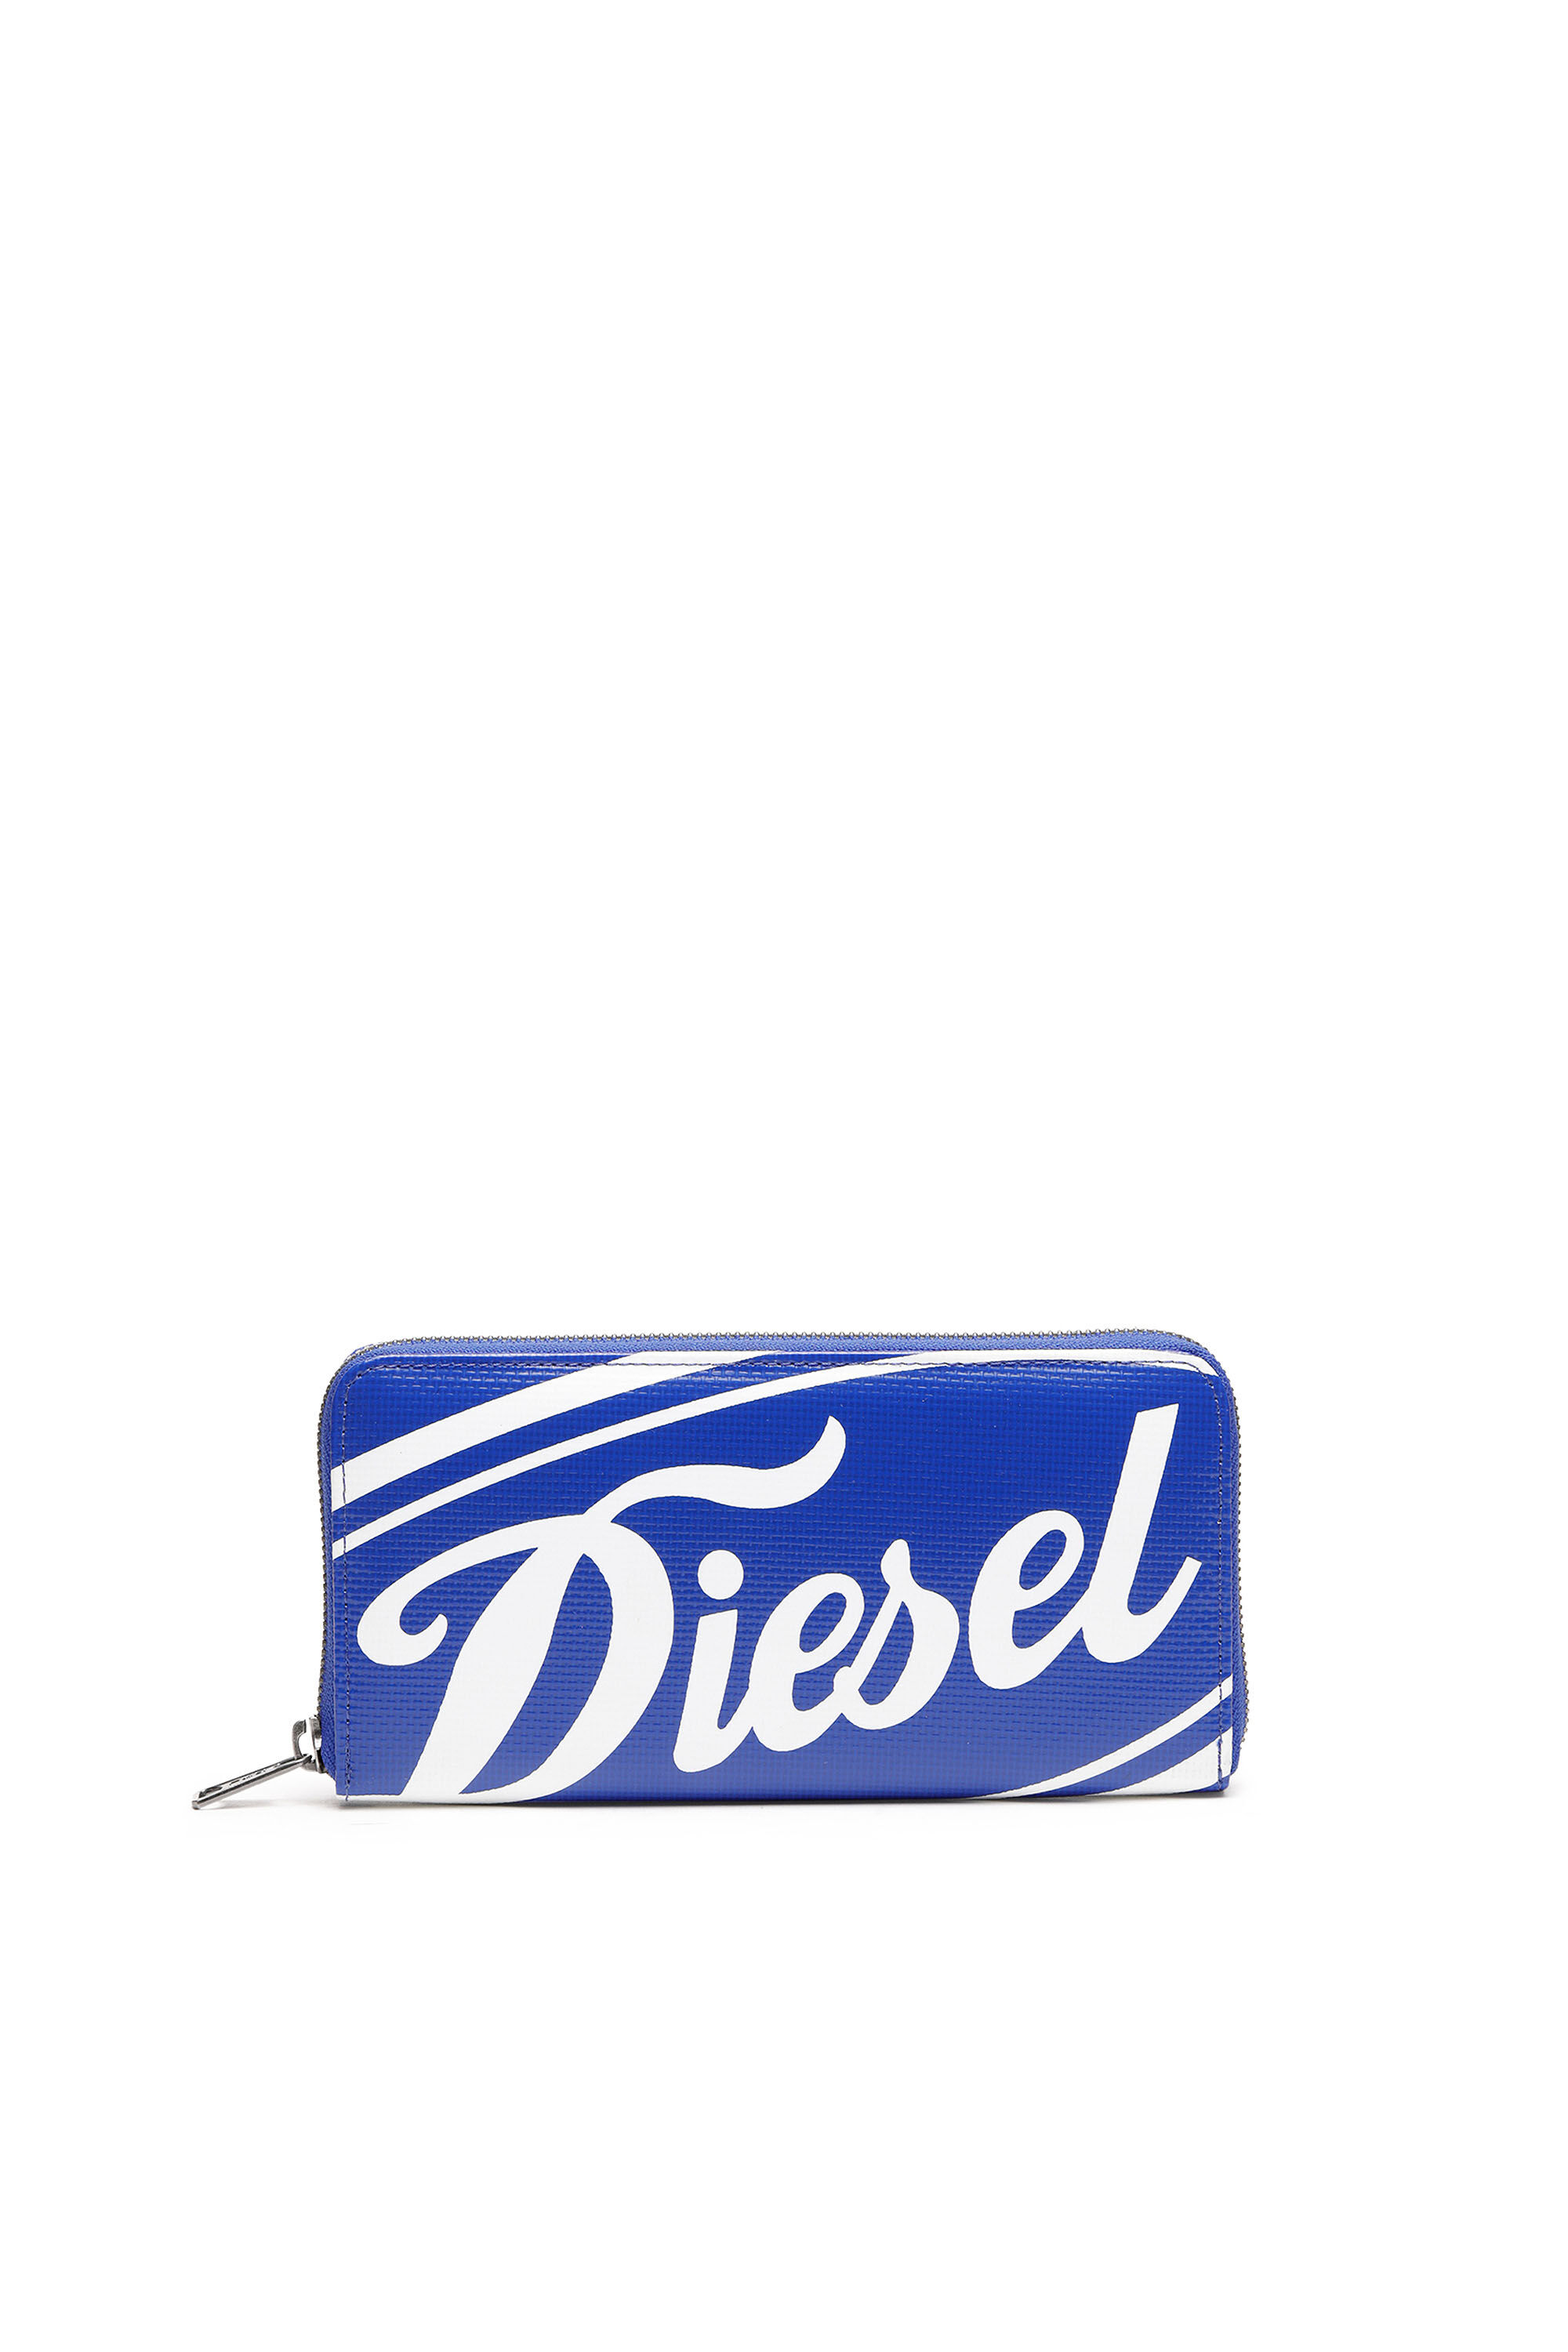 Diesel - 24 ZIP,  - Image 1